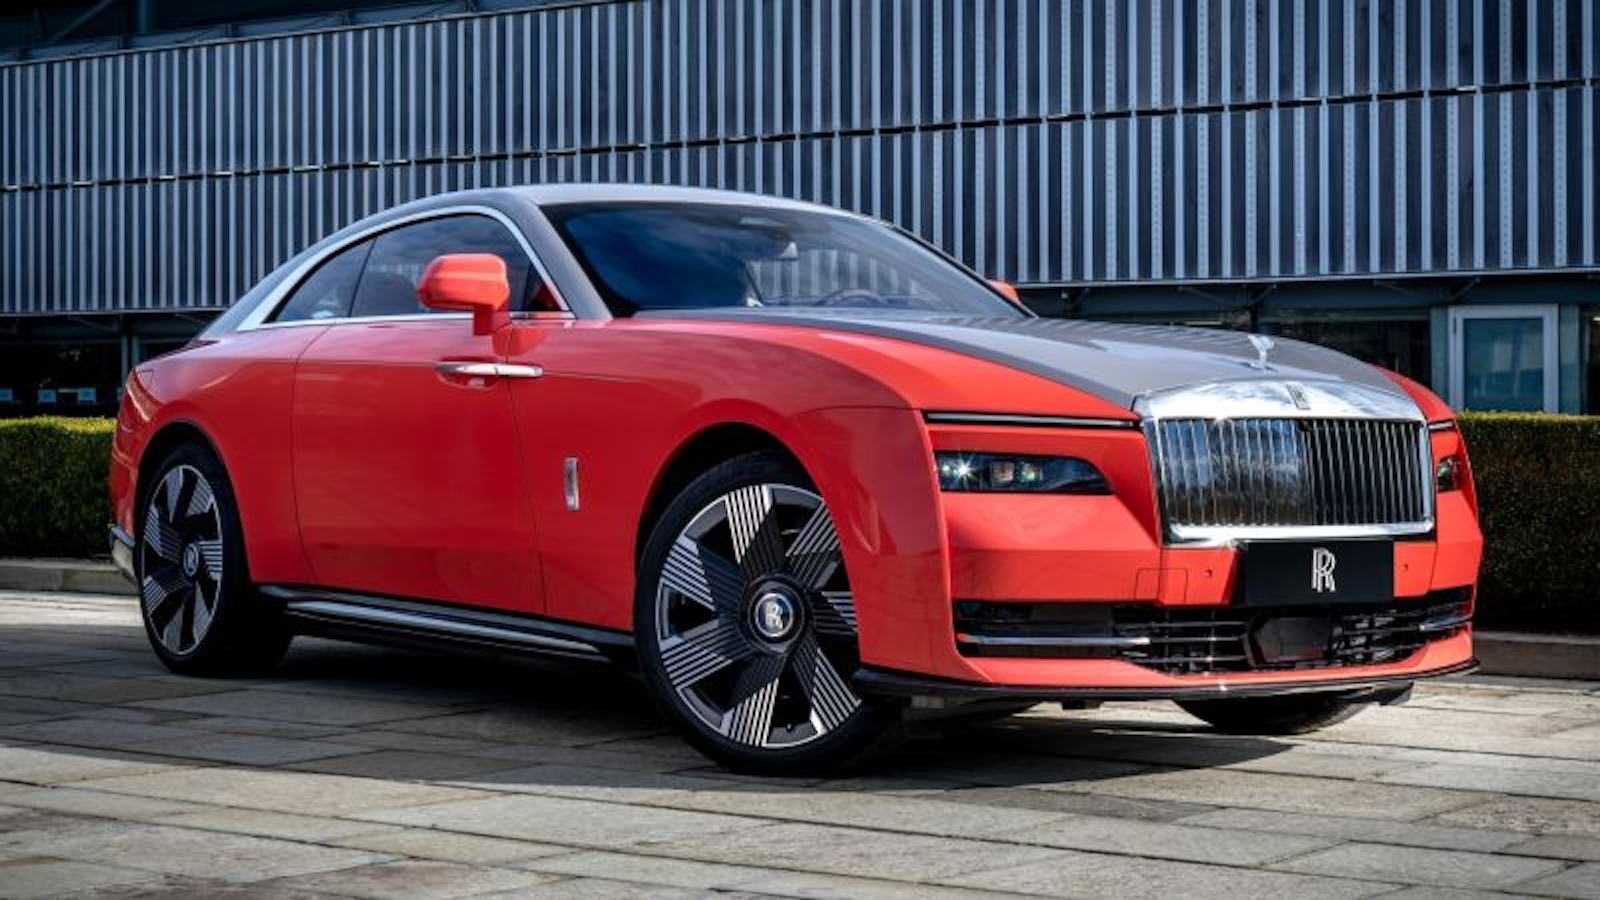 Rolls-Royce amplía su fábrica para construir coches más despacio